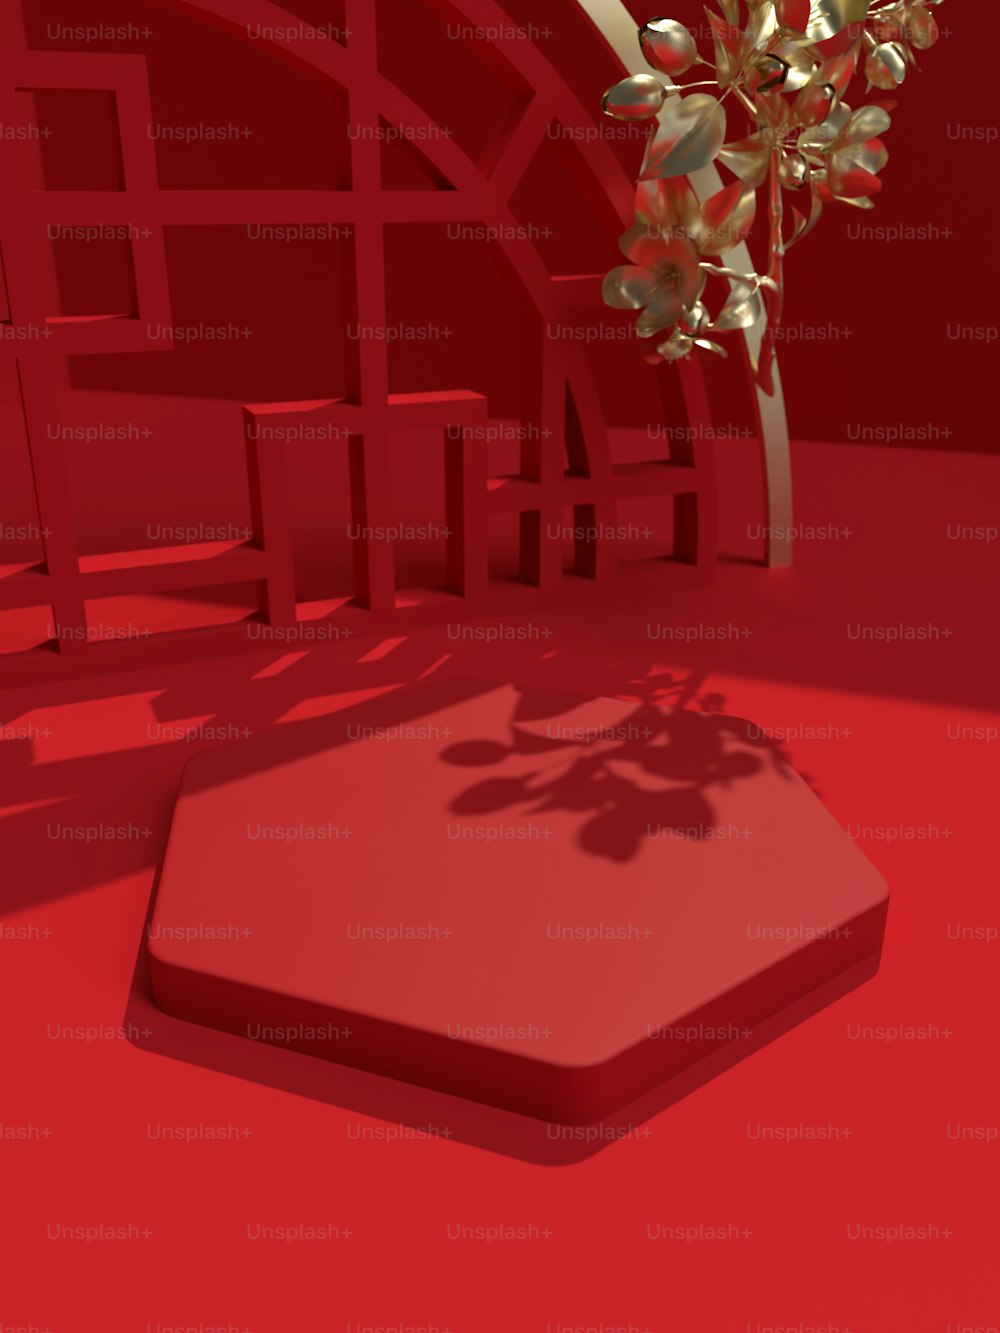 uma imagem 3d de uma árvore em uma sala vermelha